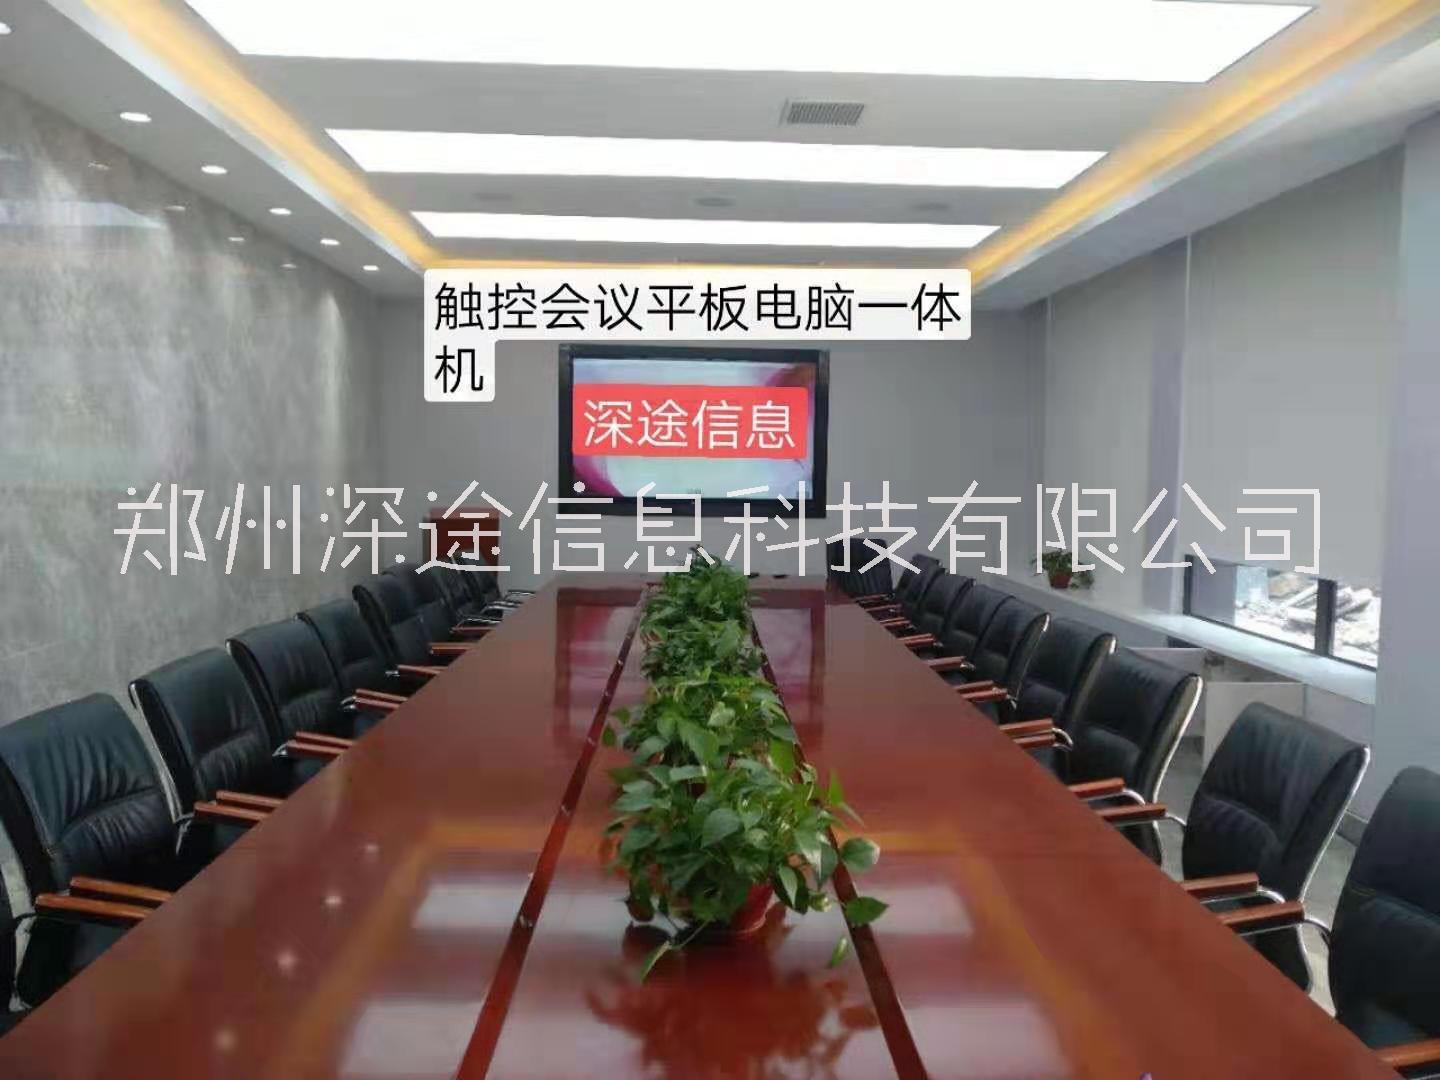 郑州市深途5G云控视频会议智慧会议室厂家深途5G云控视频会议智慧会议室成为大中小企业会议室配置优化的好方案不一般的会议室